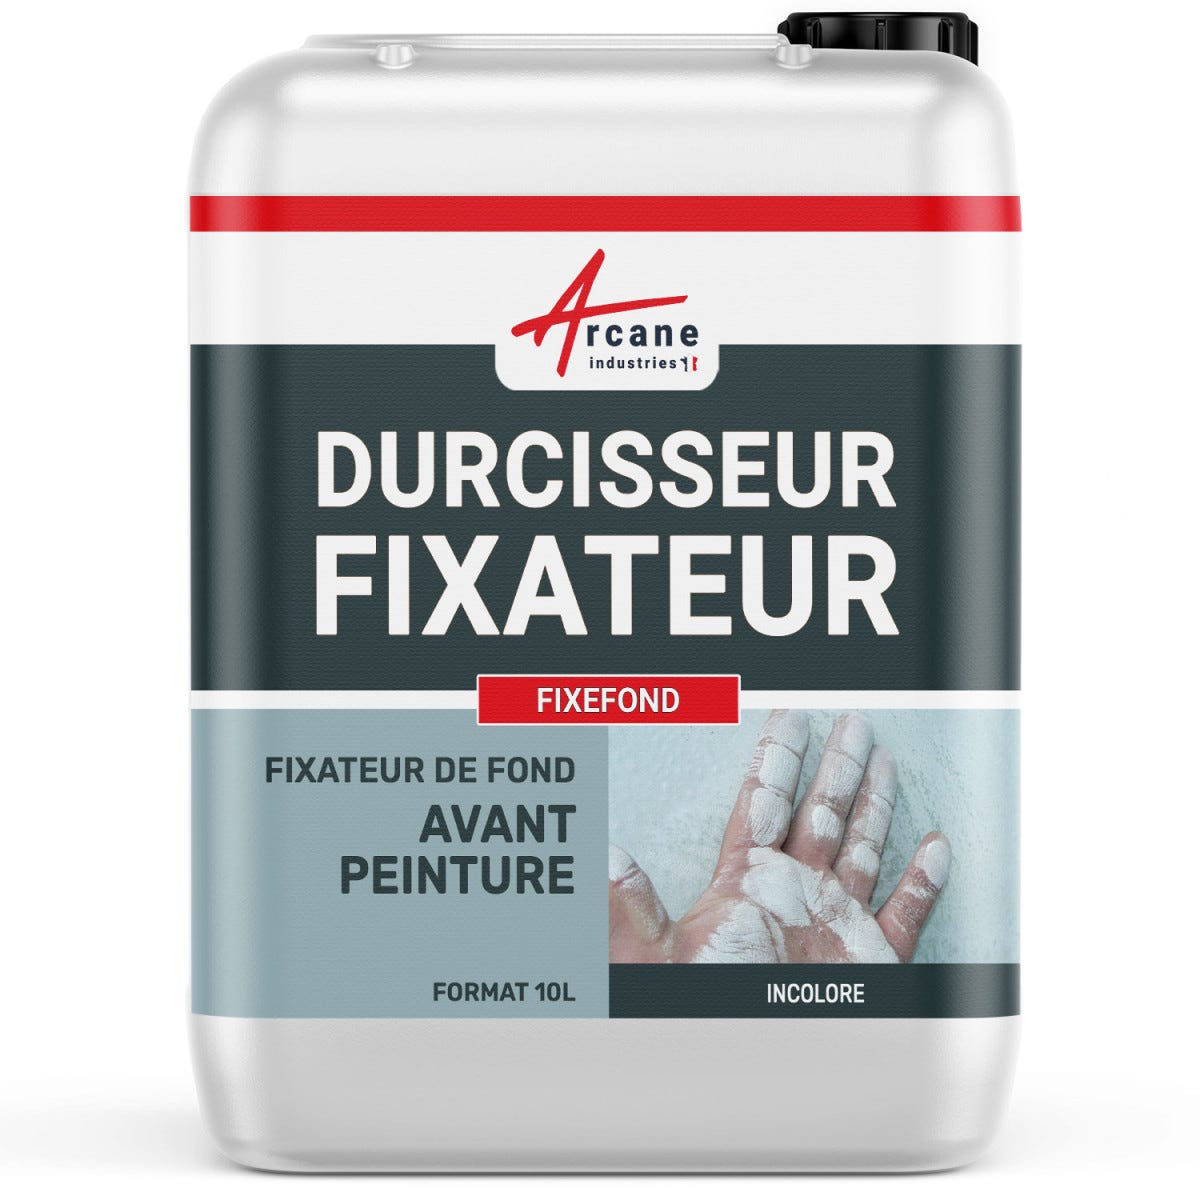 Durcisseur fixateur avant peinture (phase aqueuse) - FIXEFOND - 10 L - - ARCANE INDUSTRIES 0